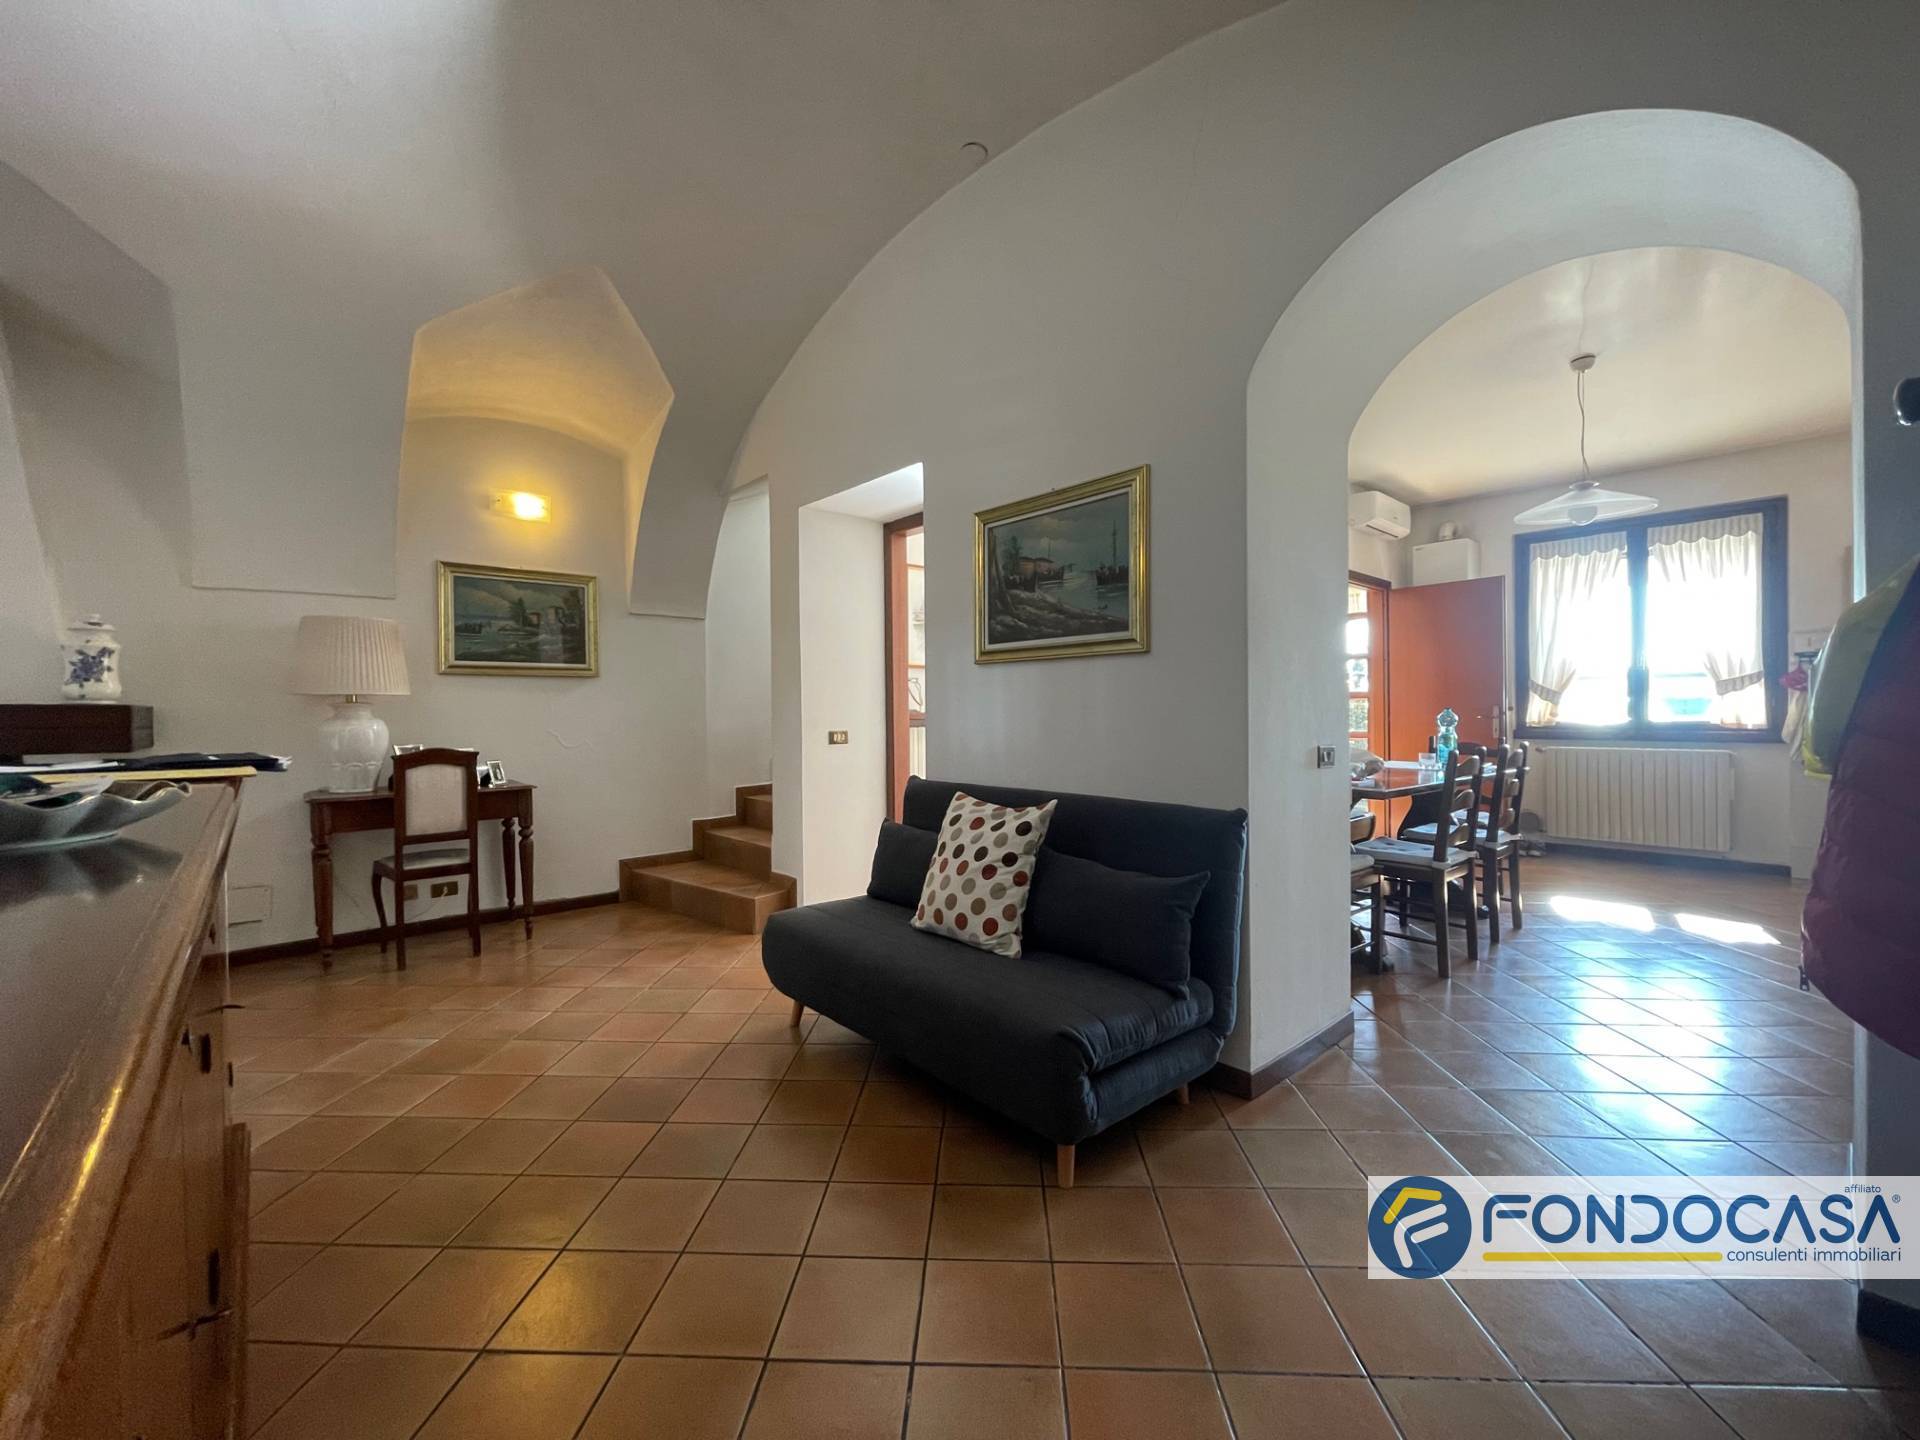 Foto - Appartamento In Vendita Castelli Calepio (bg)